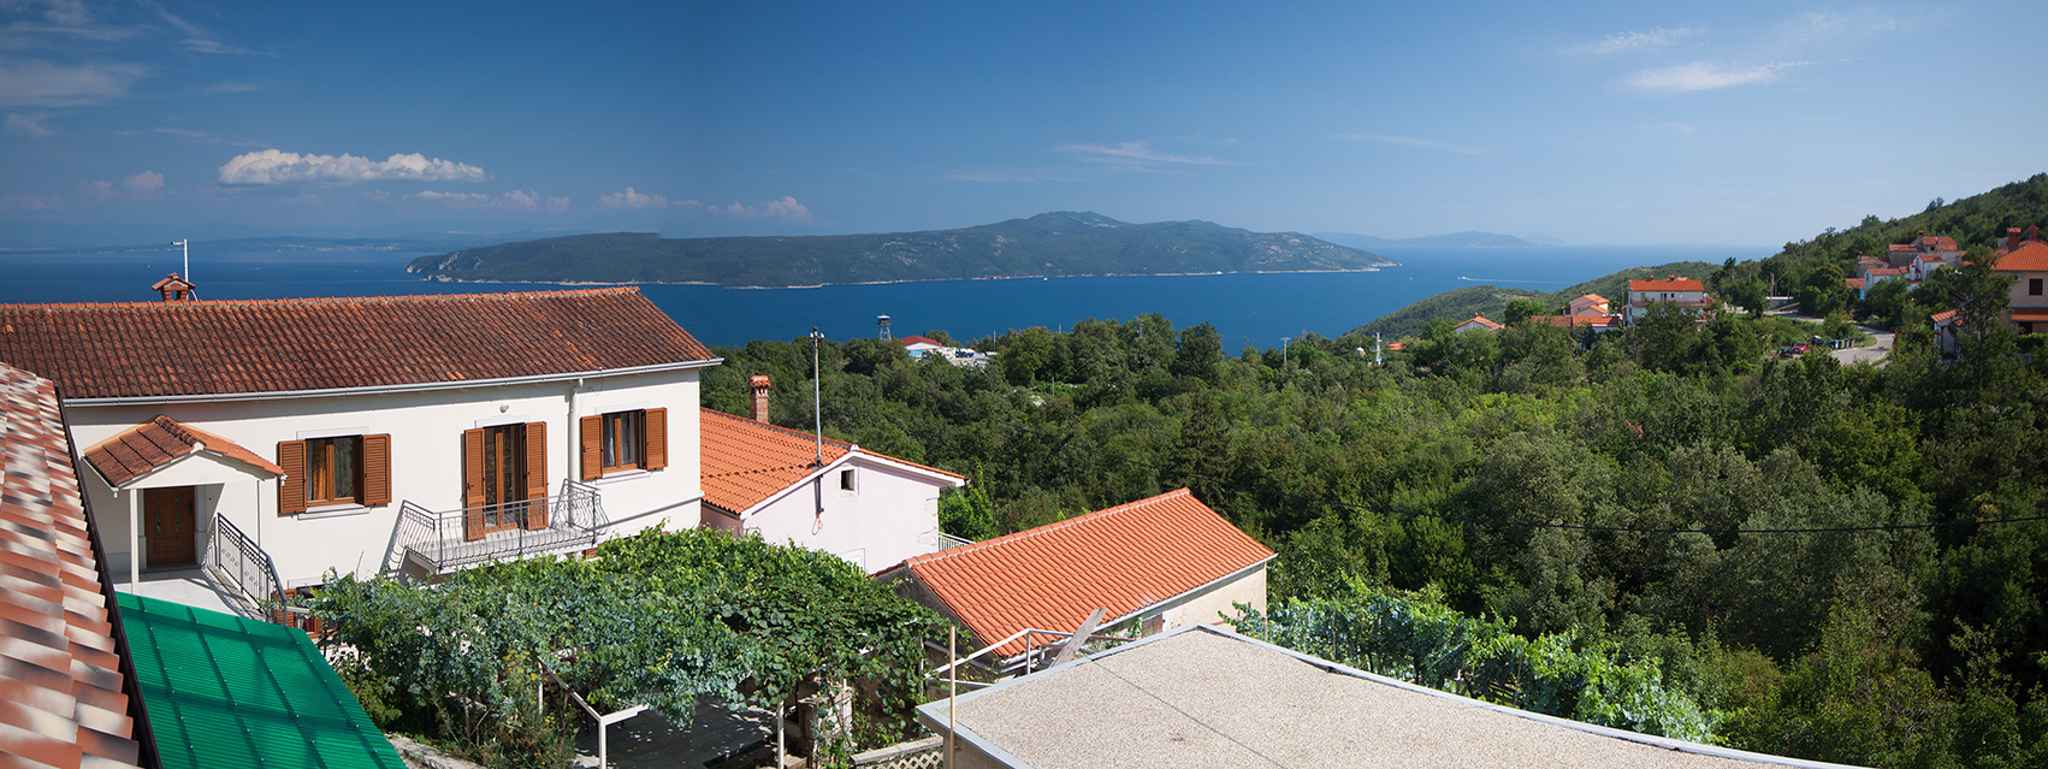 Ferienhaus mit Blick auf das Meer Ferienhaus in Europa